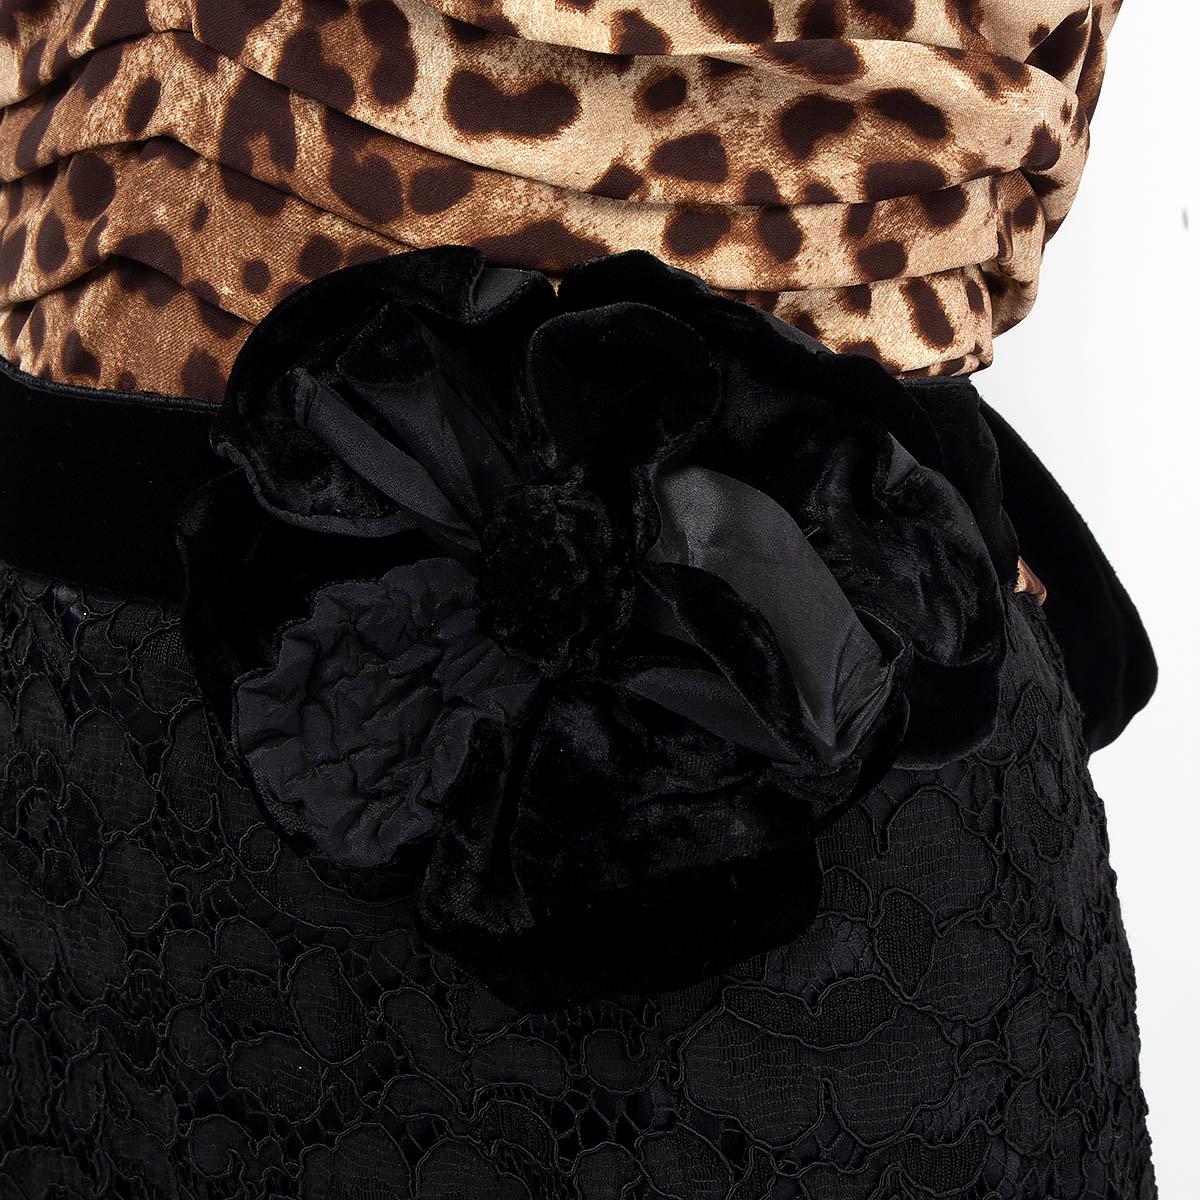 Black DOLCE & GABBANA black & beige LEOPARD & LACE BOW GOWN MAXI Dress 44 L For Sale